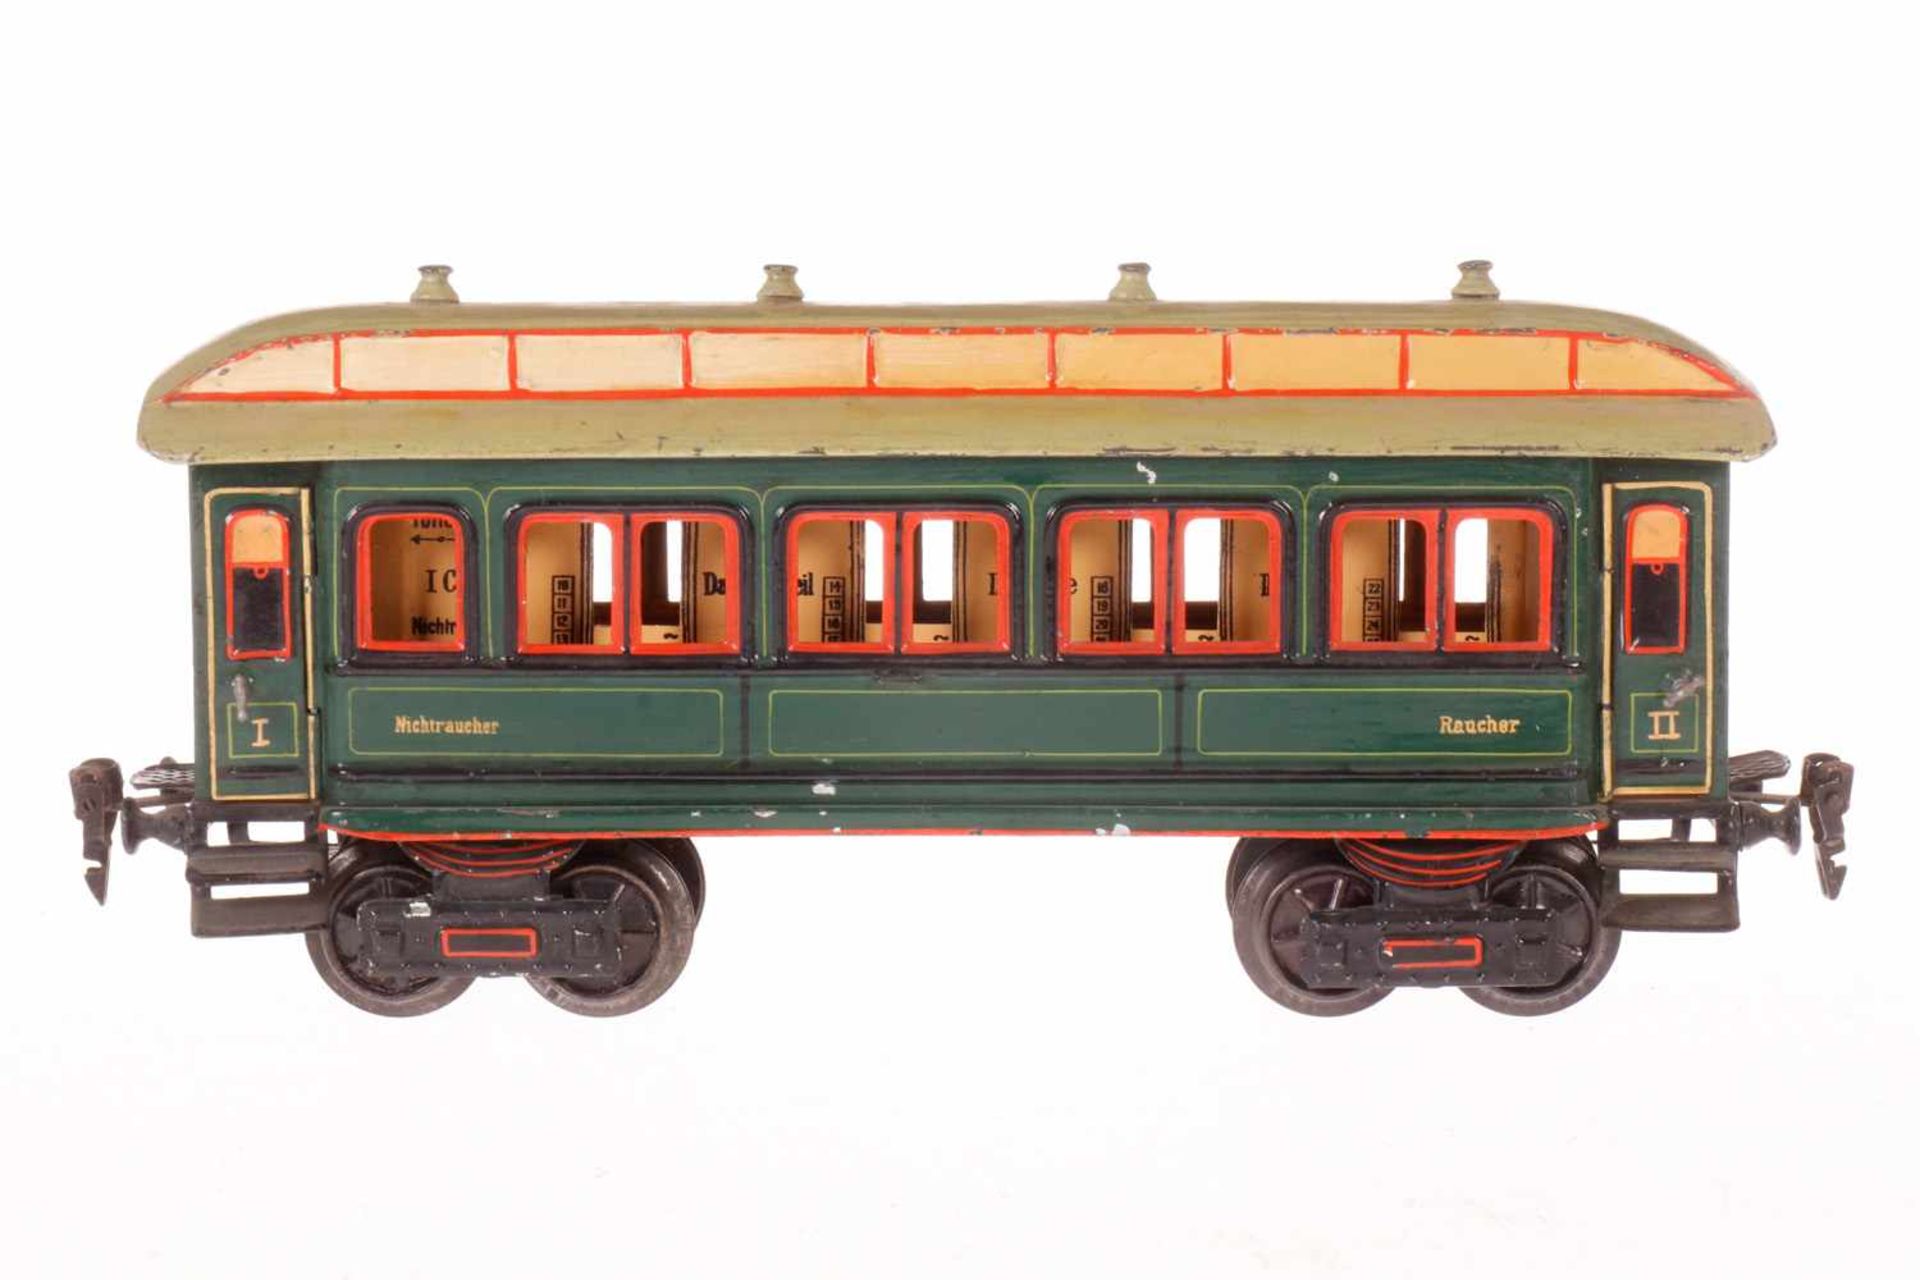 Märklin Personenwagen 1841, S 1, uralt, grün, HL, mit Inneneinrichtung und 4 AT, min.